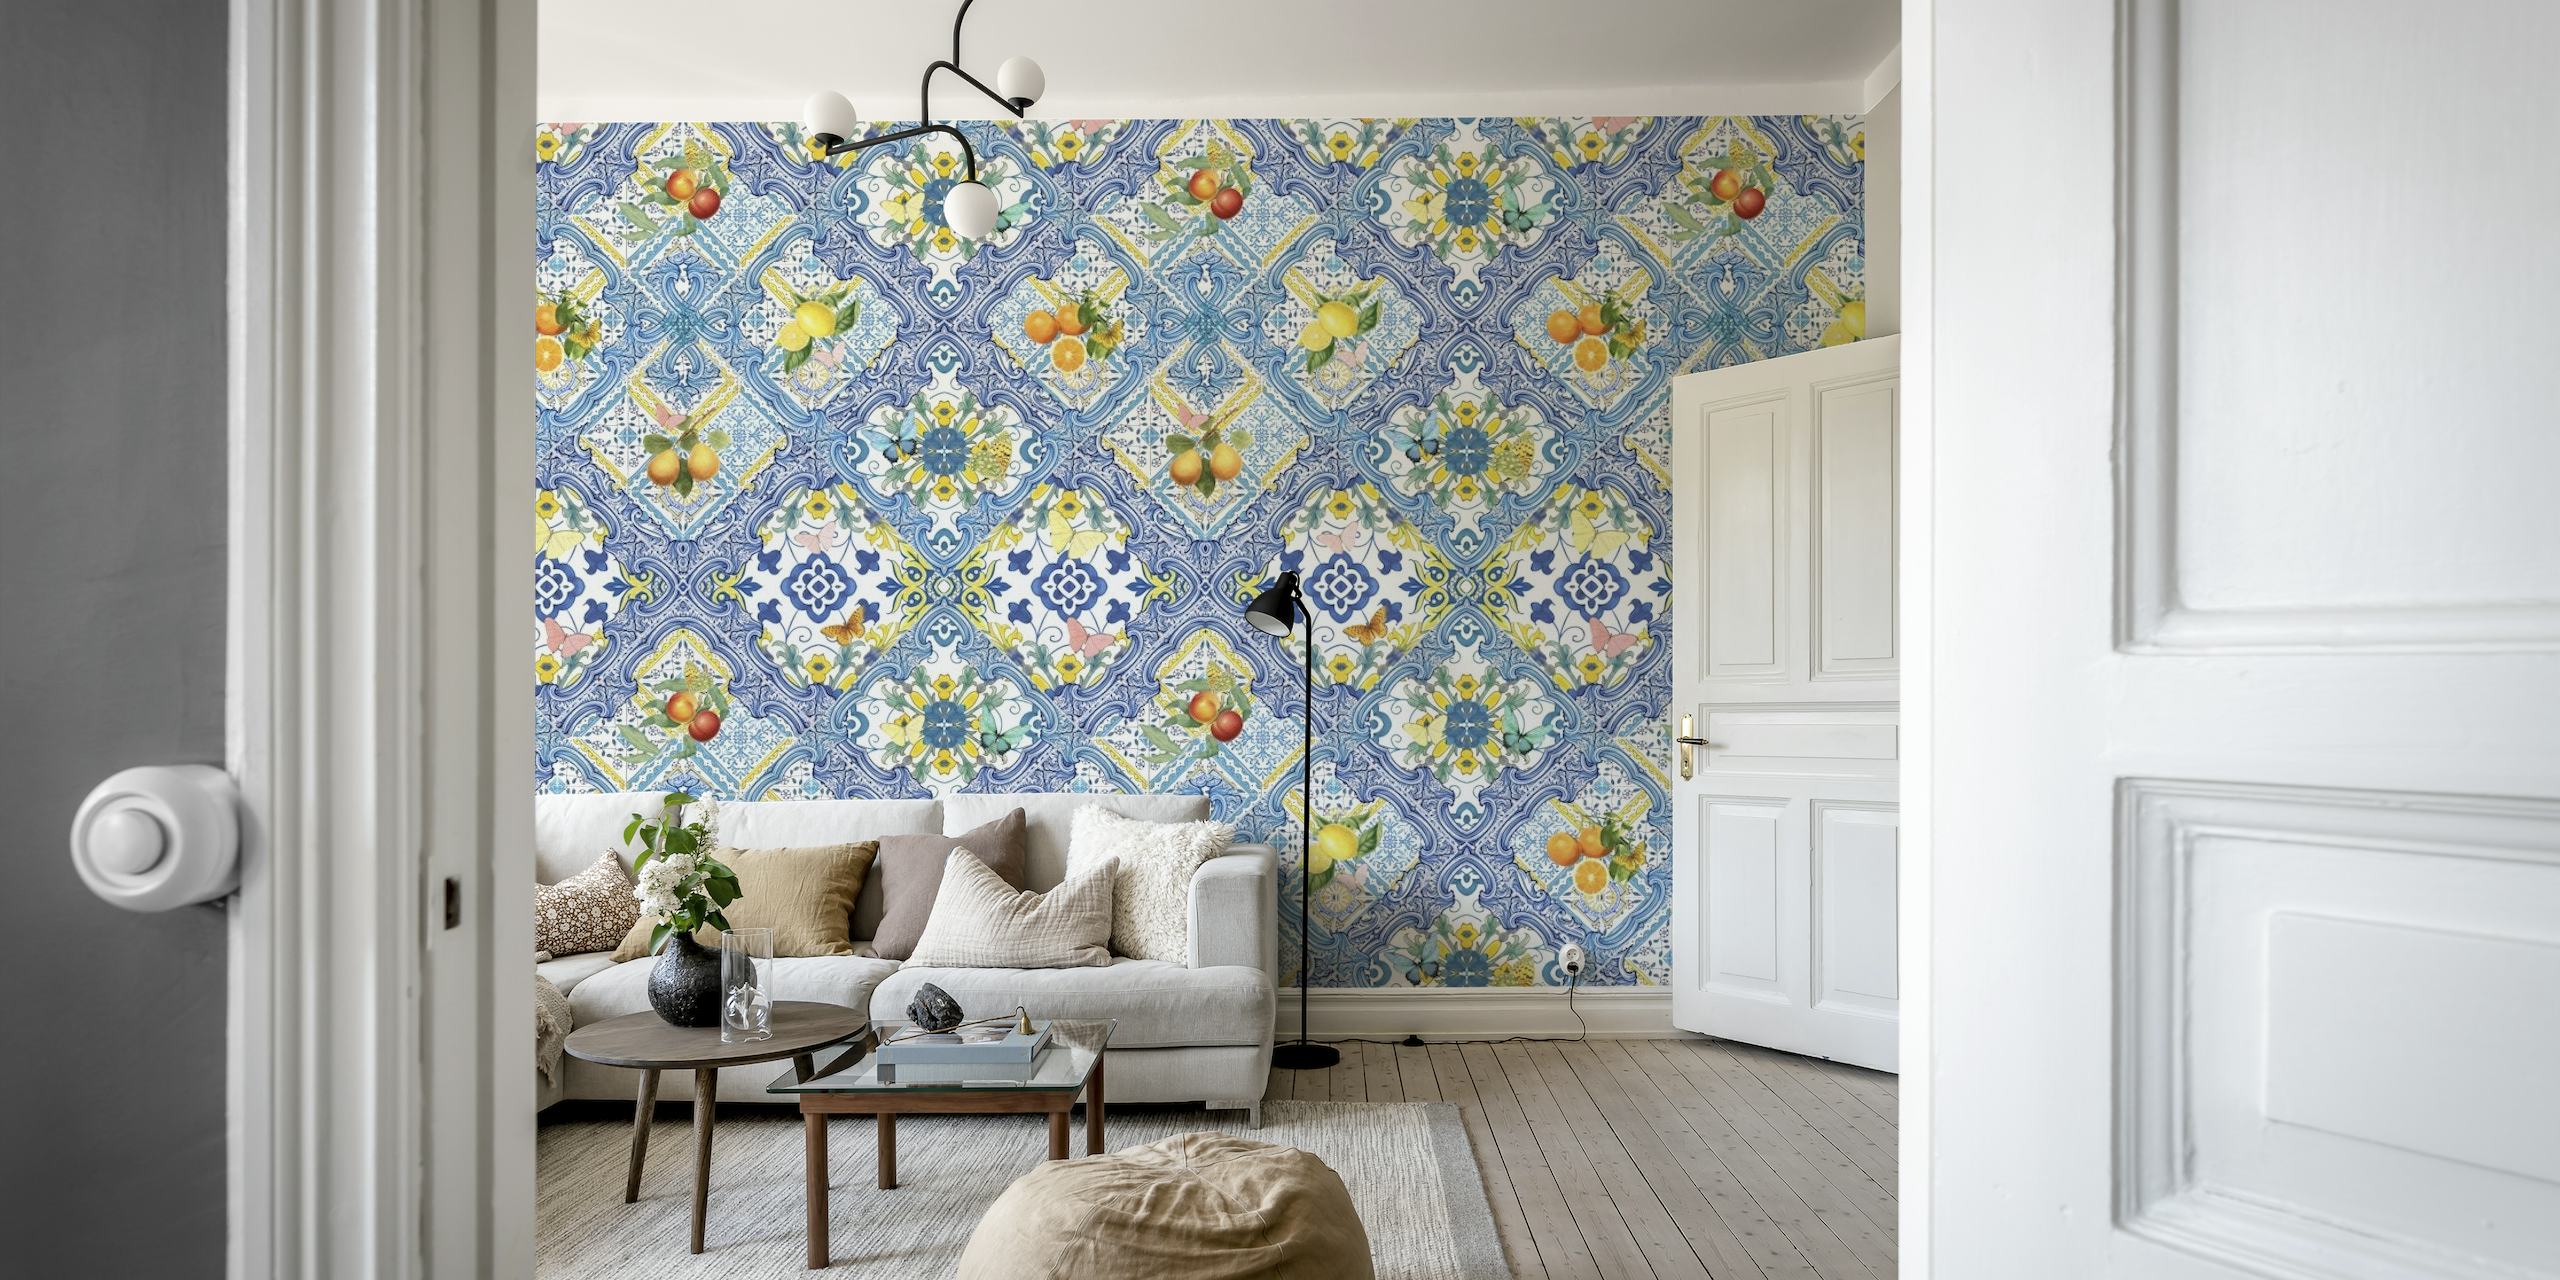 Mediterranean tiles and citrus fruit papiers peint